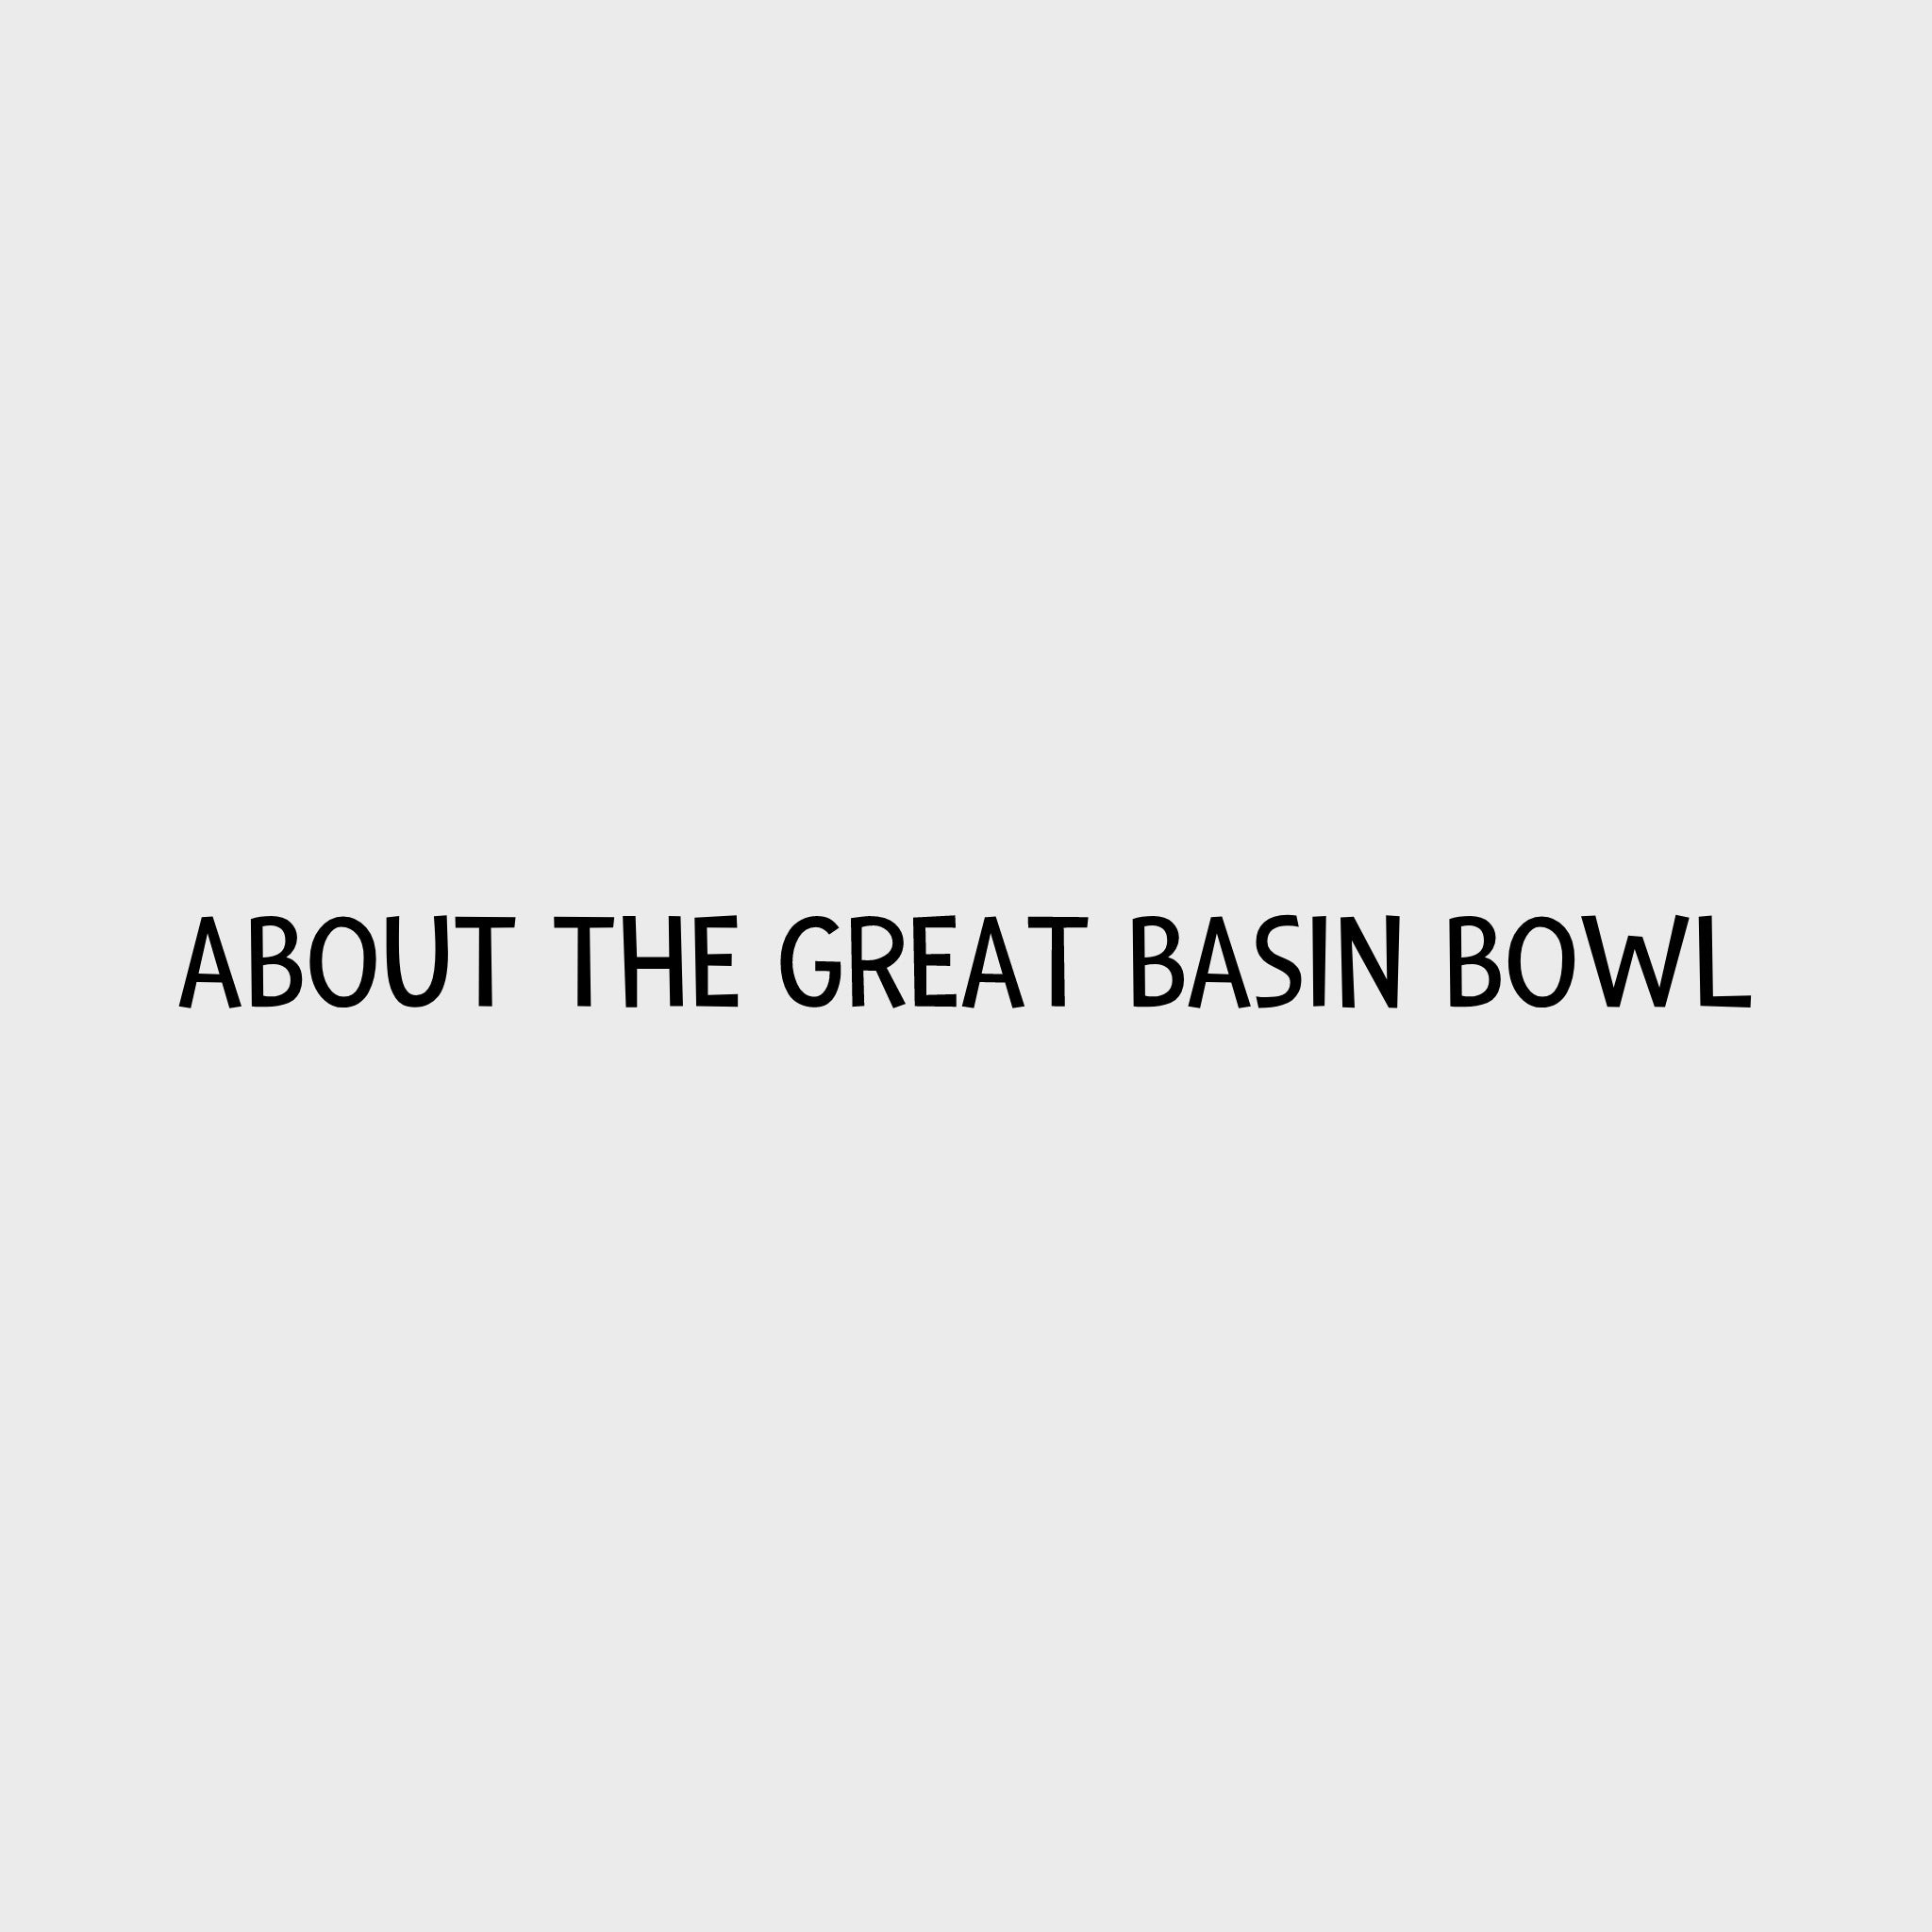 Video - Ruffwear Great Basin Bowl